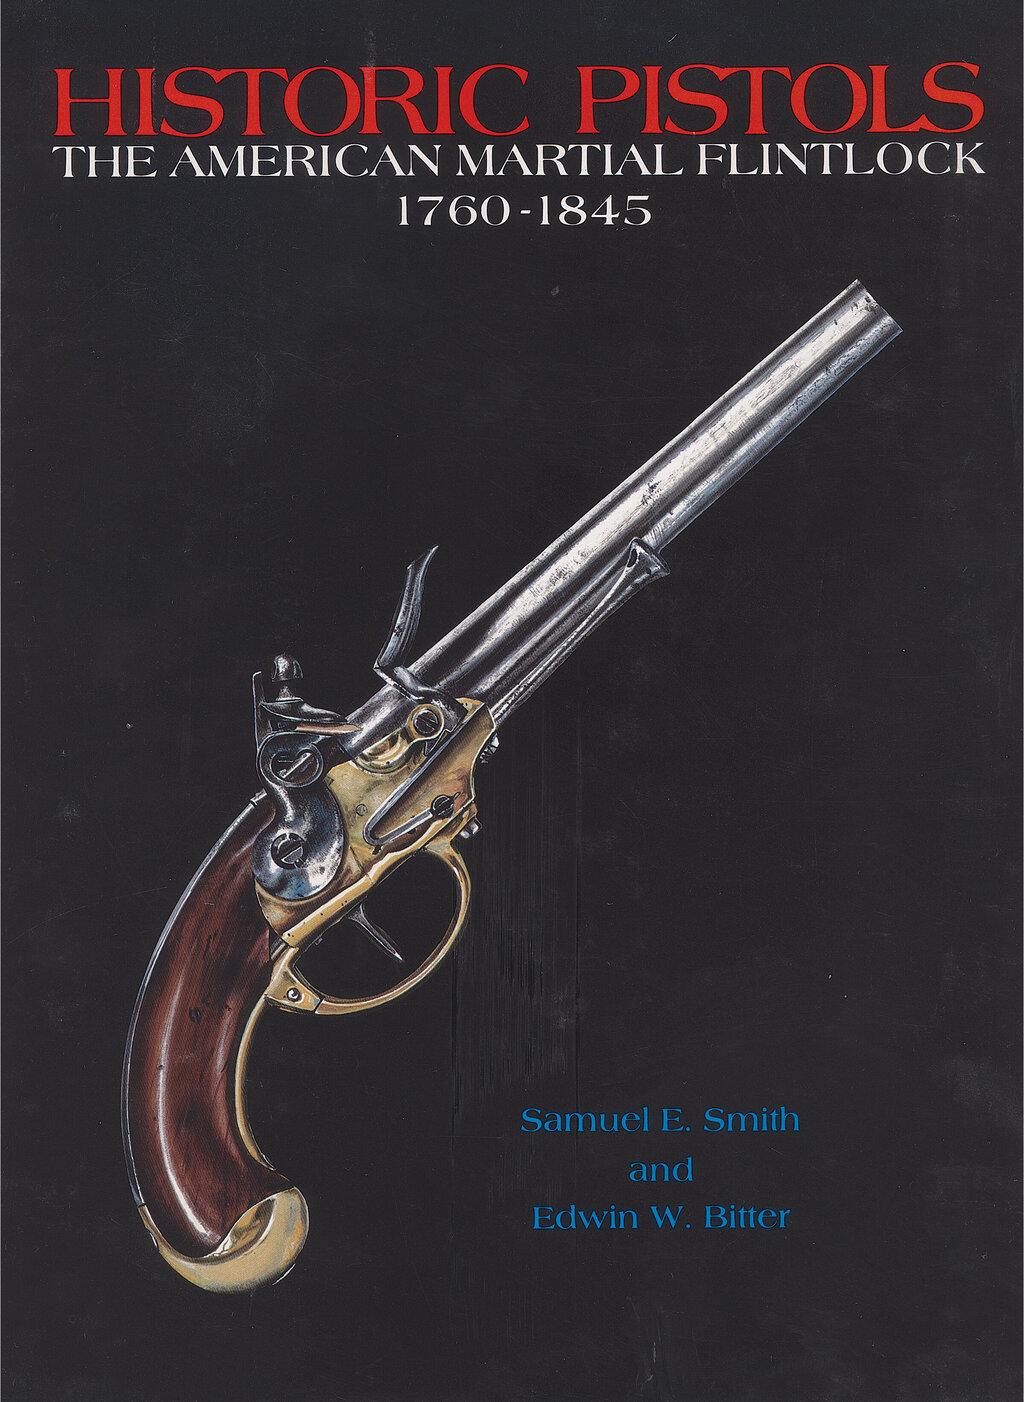 Schweitzer/Wise Marked Brass Barrel Flintlock Pistol